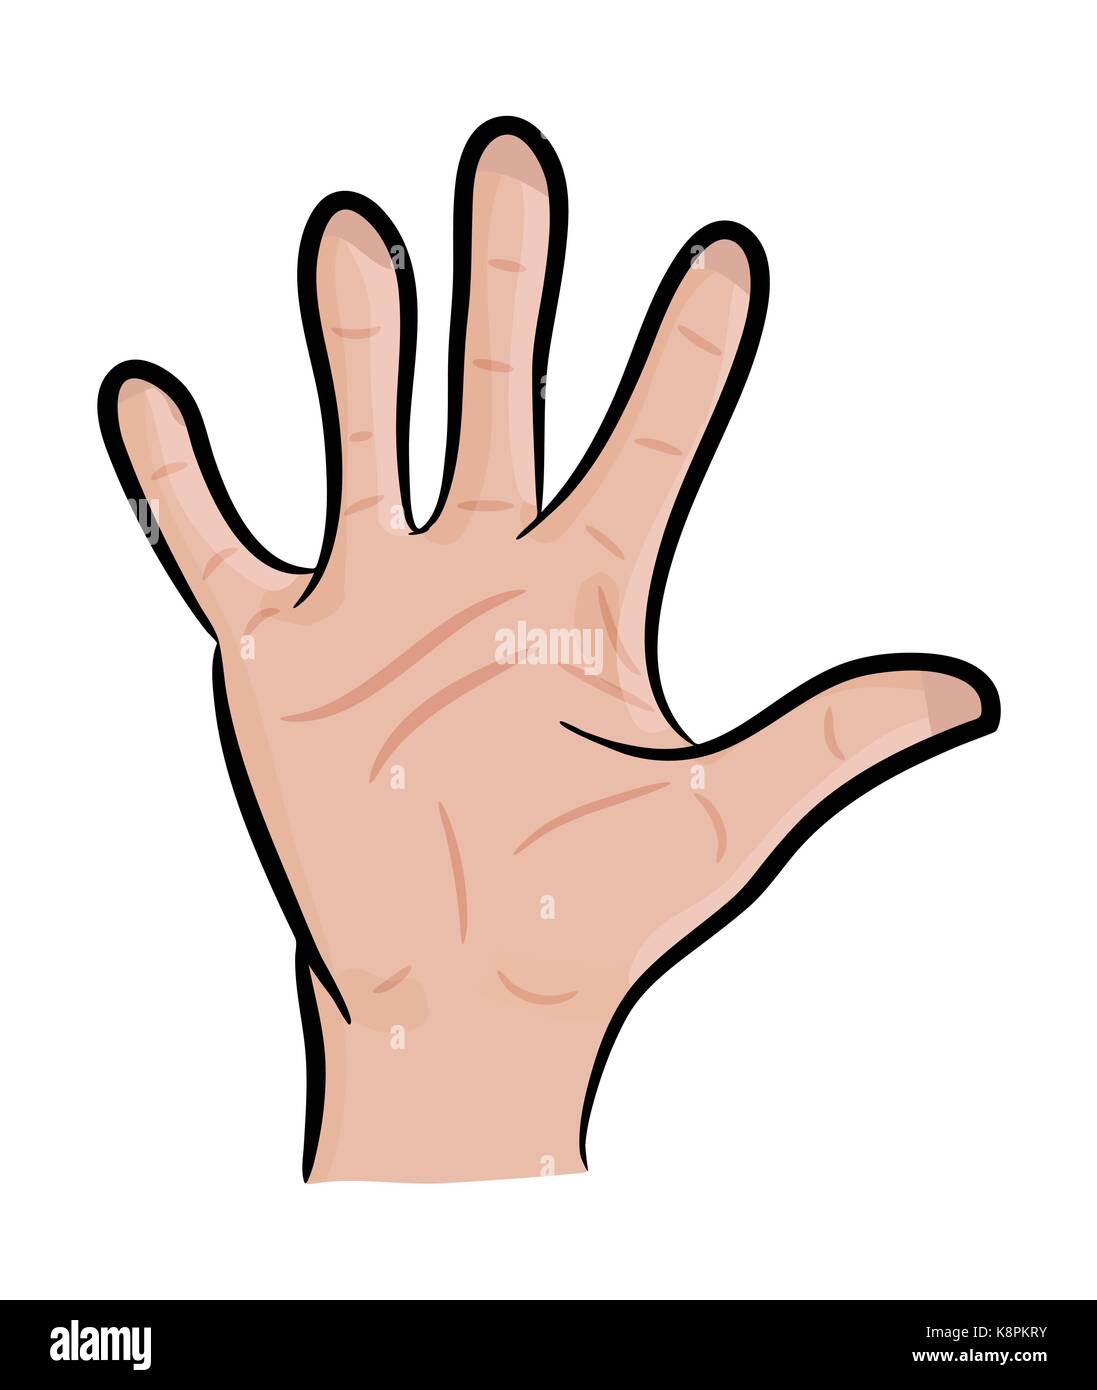 Image de caricature main humaine, le geste paume ouverte, en agitant, . Vector illustration isolé sur fond blanc. Illustration de Vecteur